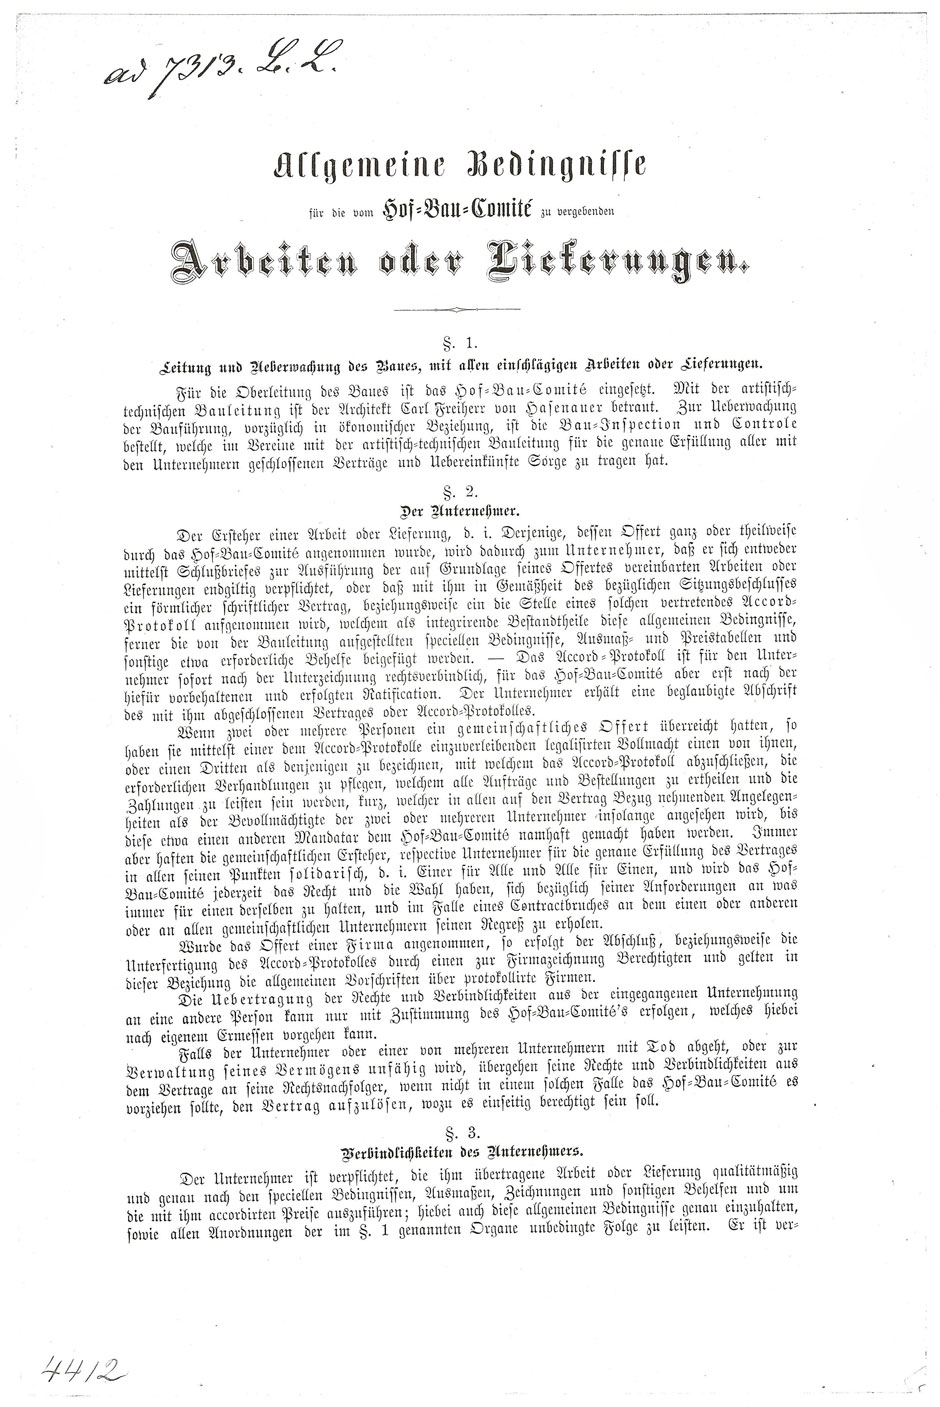 ÖStA: AT-OeStA/AVA Inneres MdI STEF A Hofbauk. 15.47 Zl. 4412 vom 19.07.1879; Blatt 2